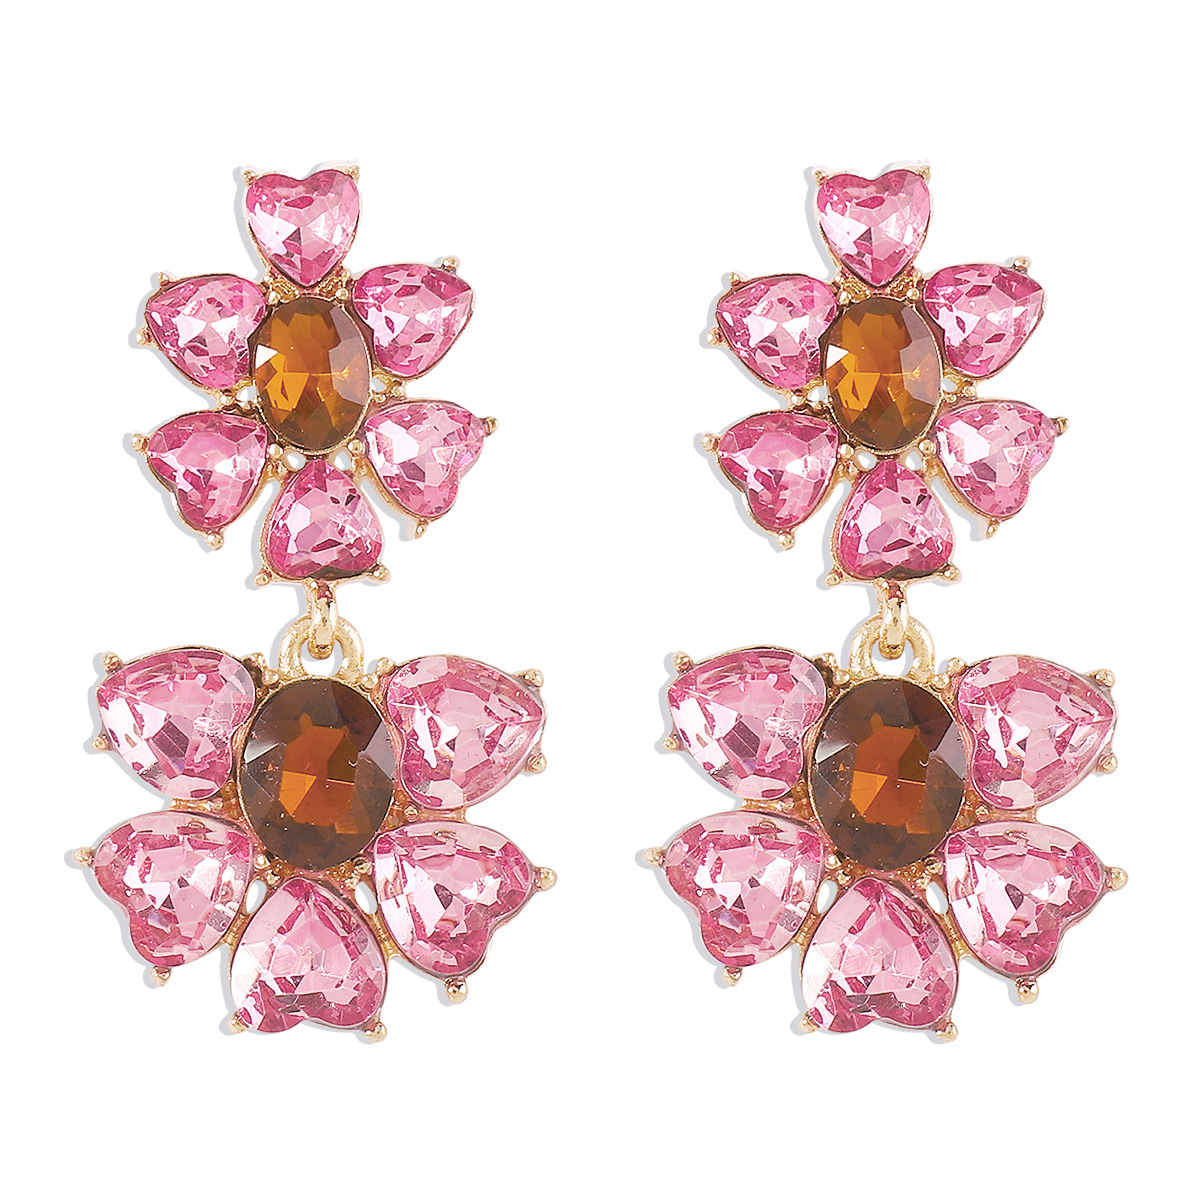 3:Pink earrings